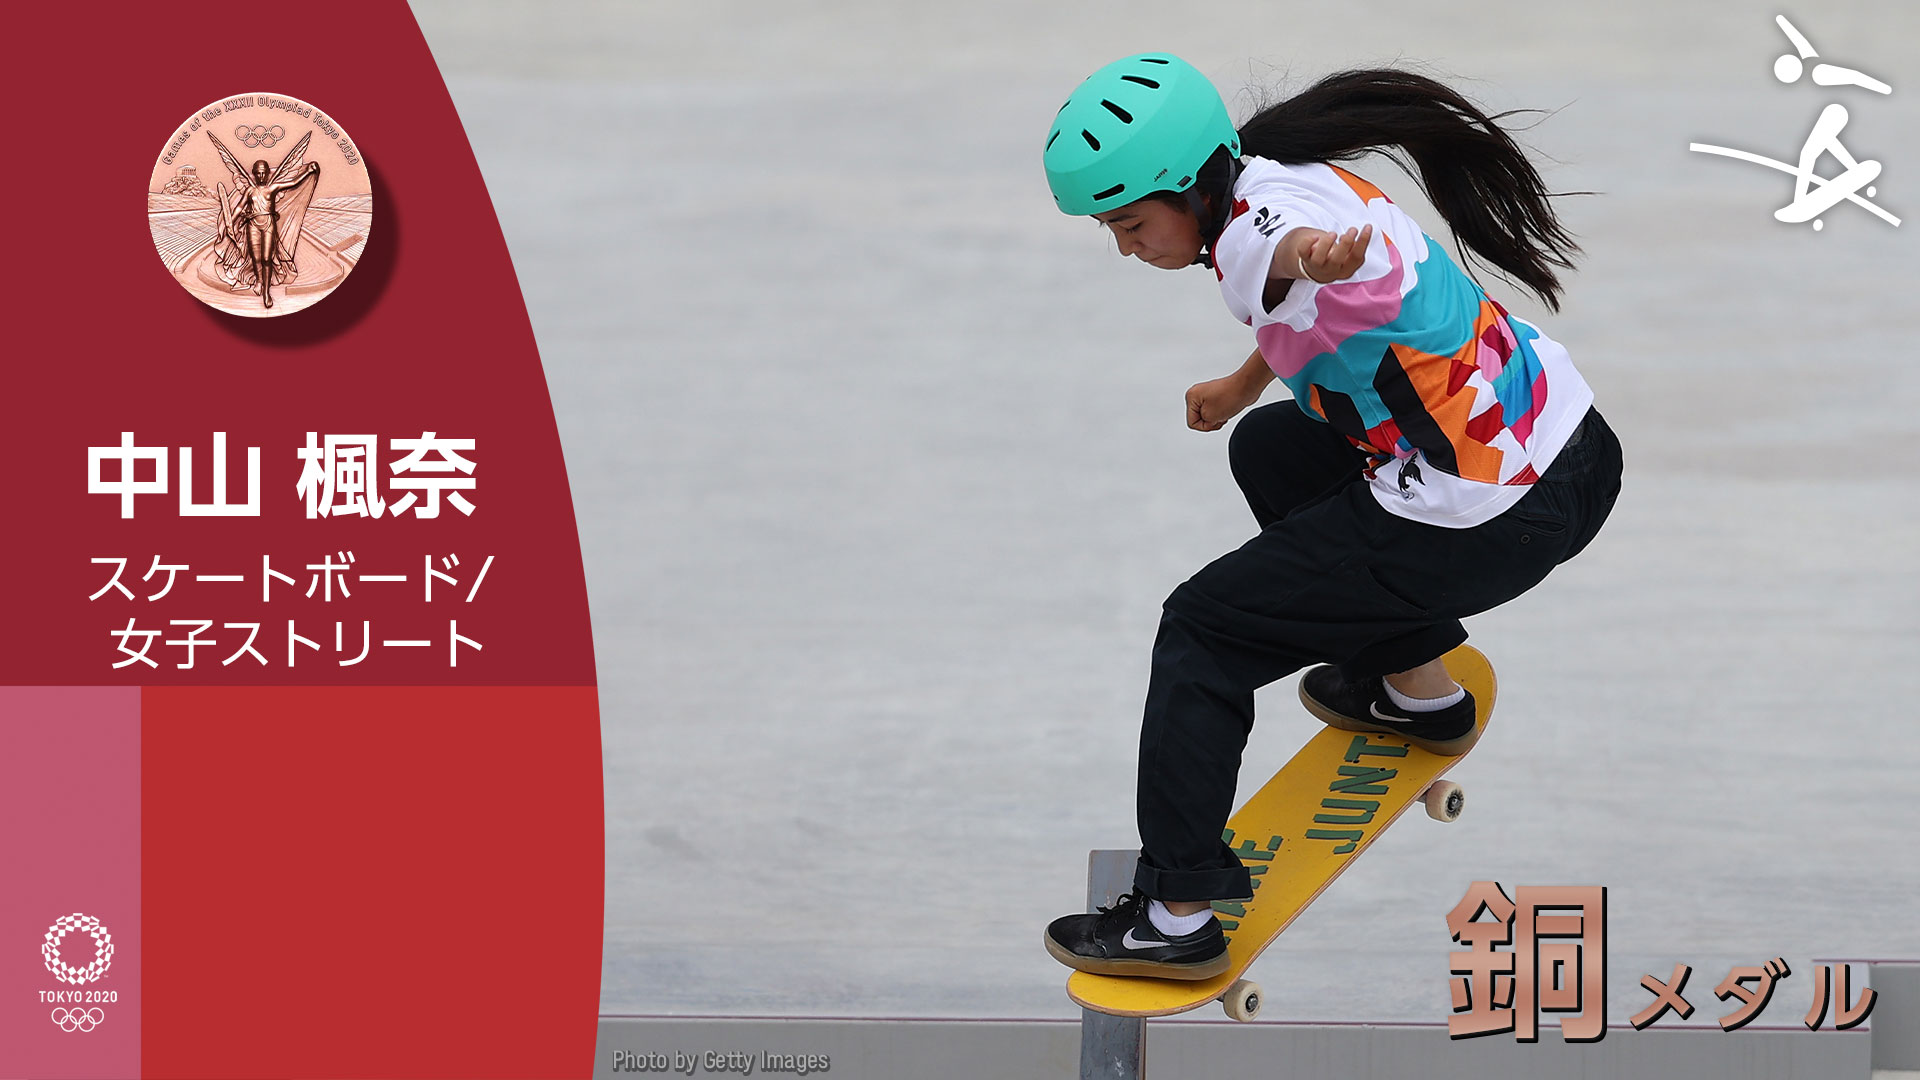 Tokyo メダル速報 スケートボード 女子ストリート 中山 楓奈選手が 銅メダル 獲得 Tokyo オリンピック スケボー T Co Alc6b7lcbd Twitter